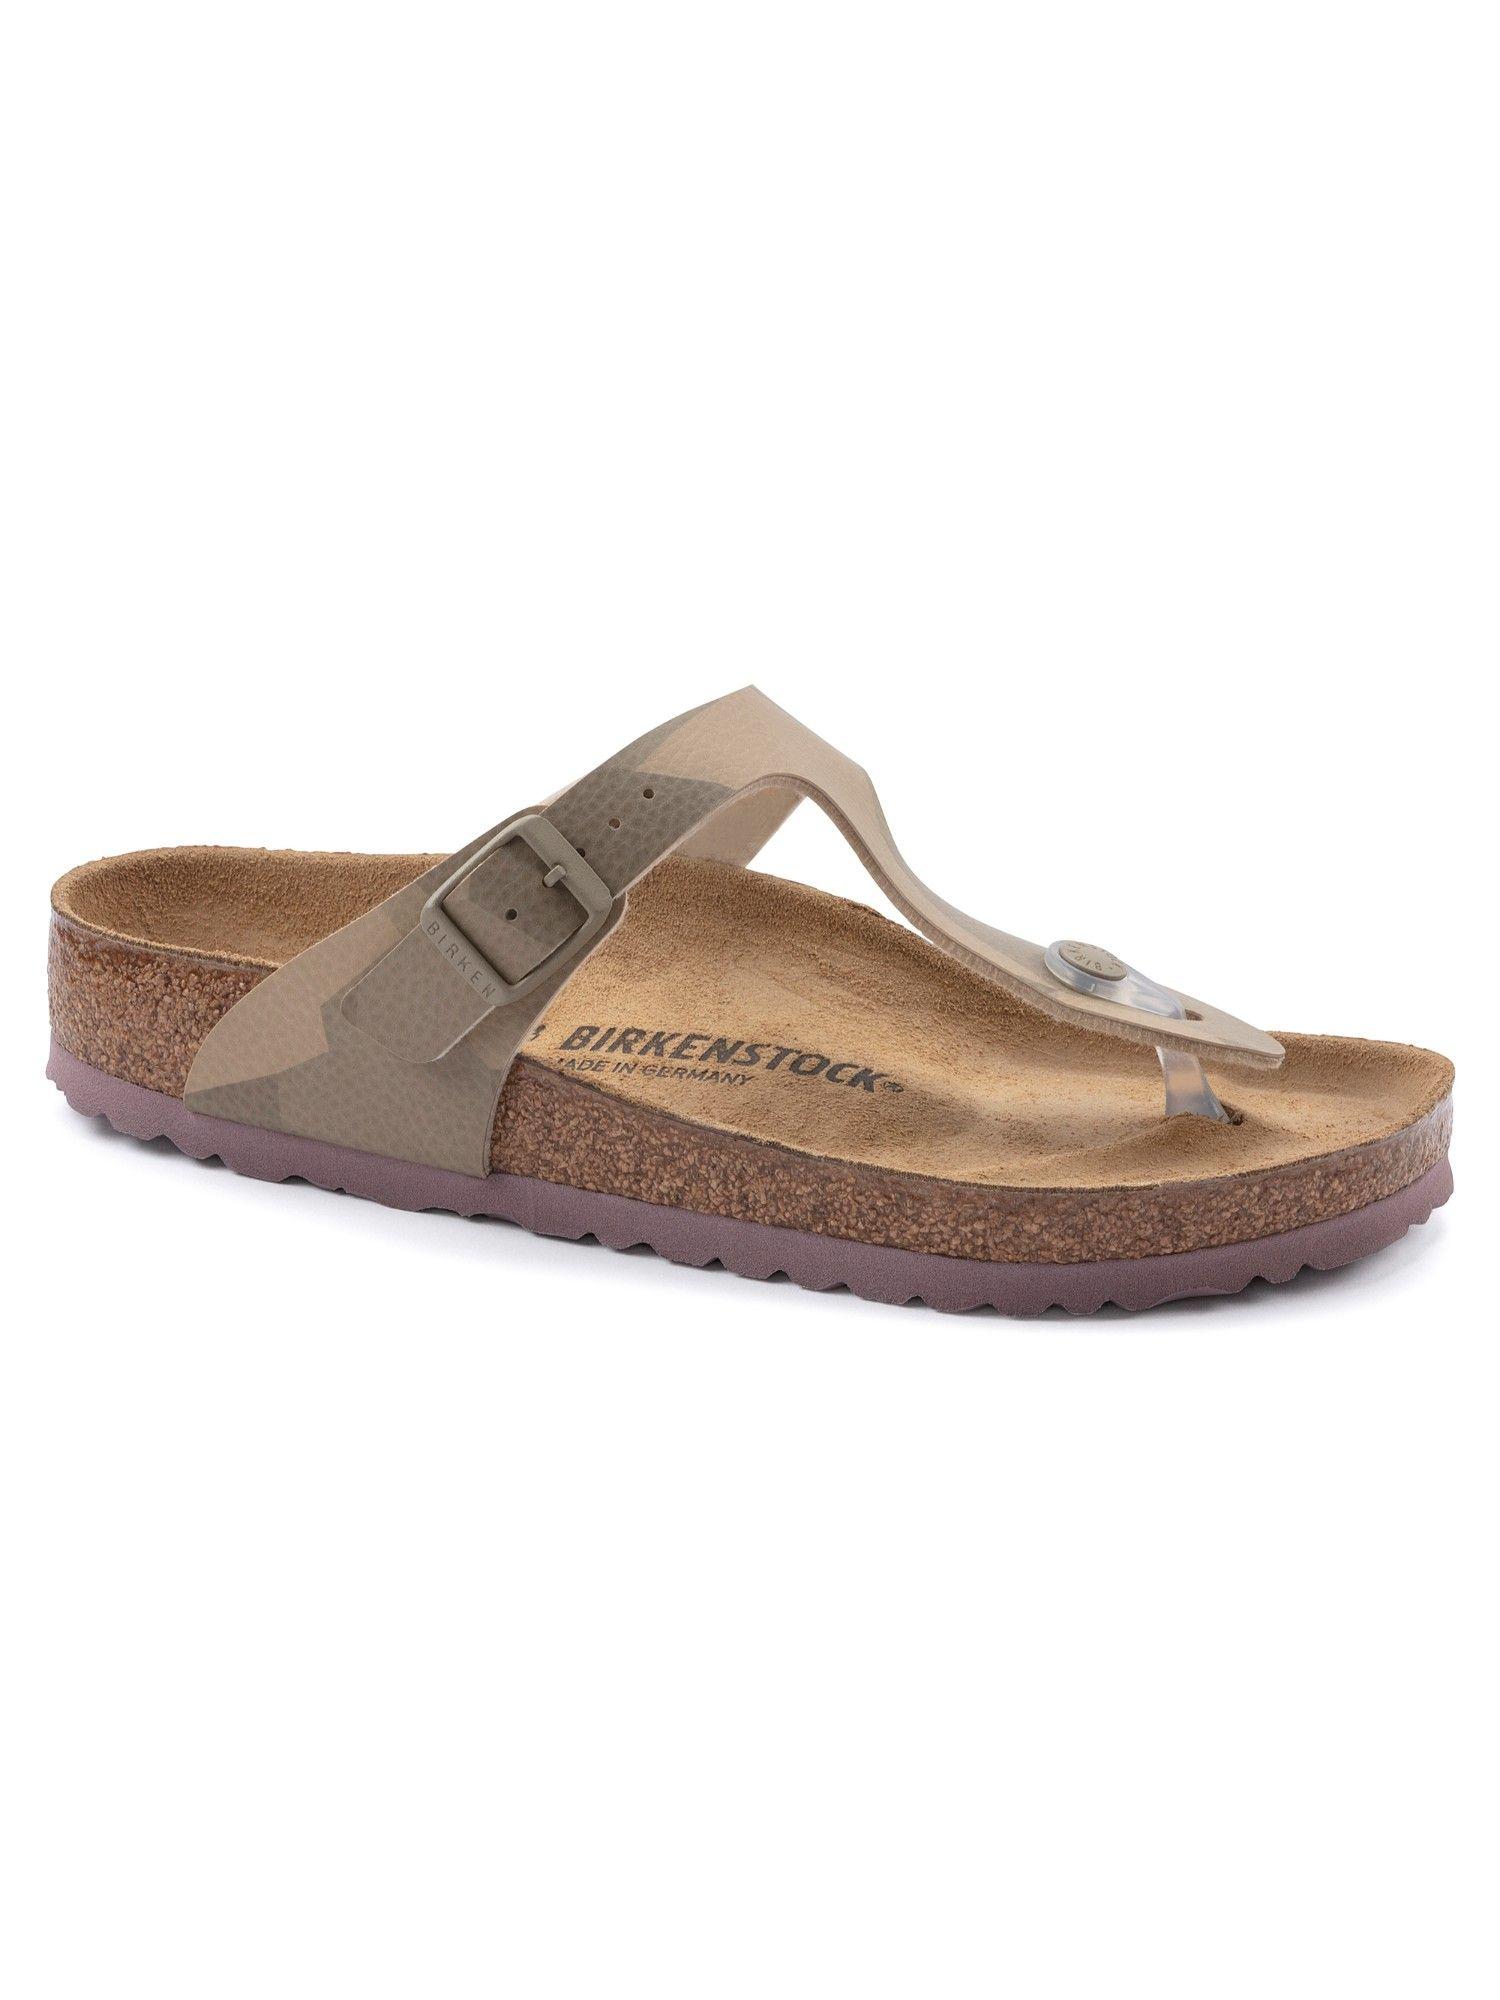 gizeh-desert-soil-geo-camo-beige-regular-width-unisex-thong-sandals